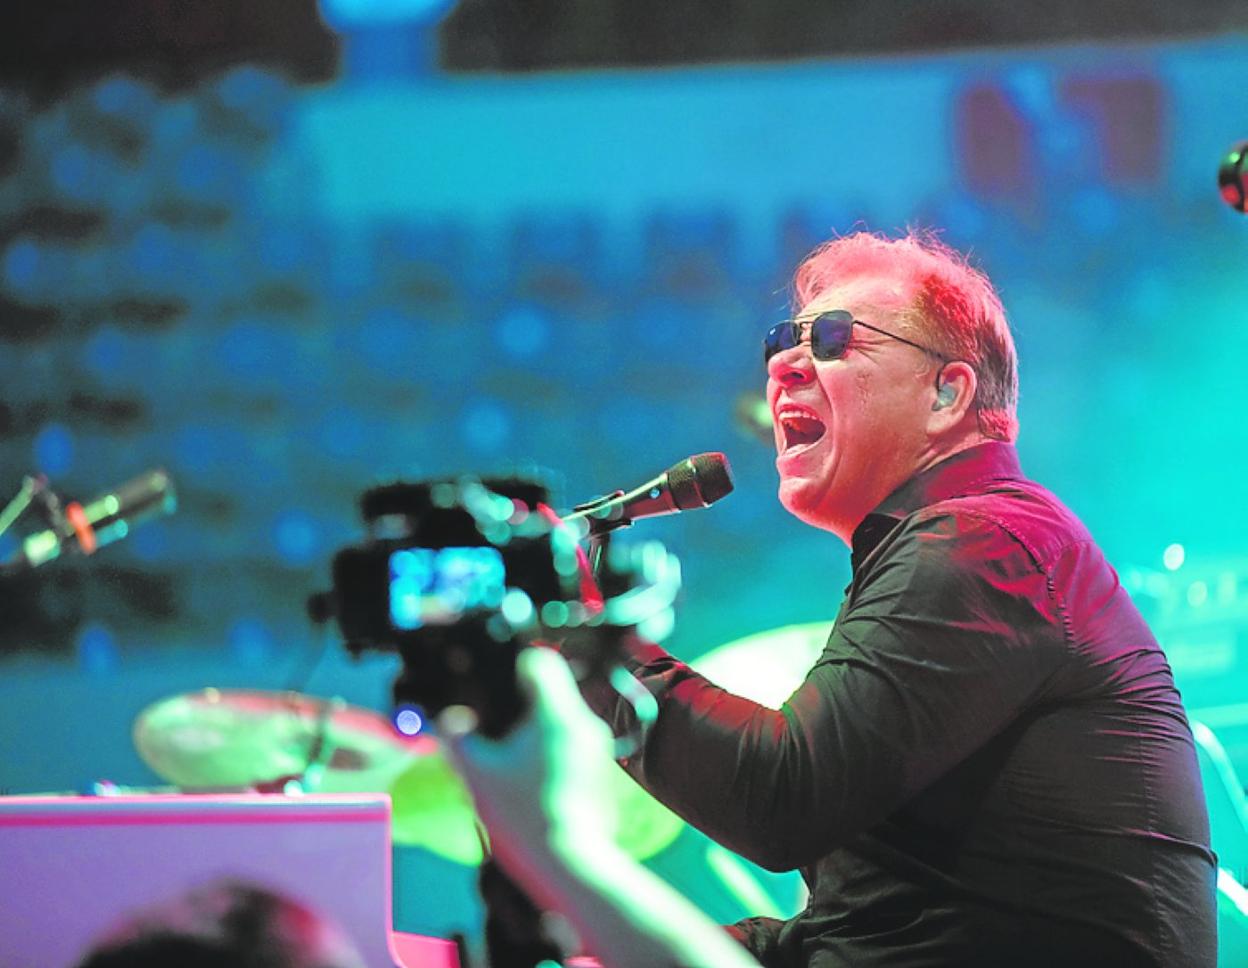 Piano man brings Elton John Experience to Mijas auditorium